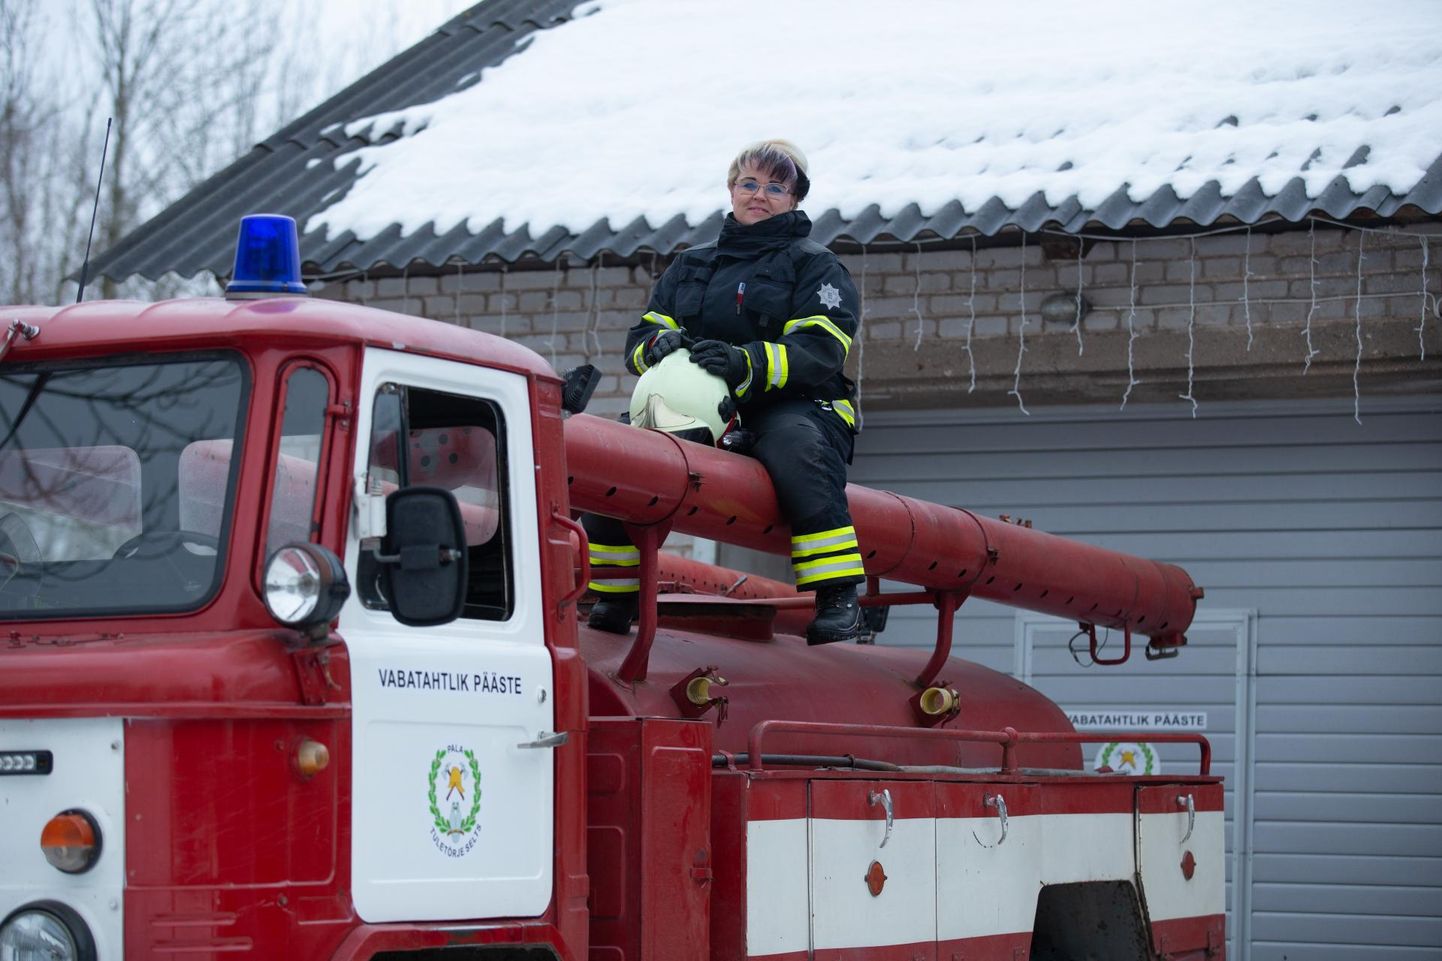 Pala tuletõrje seltsi vabatahtlik päästja Laura Tõnisson praegu alarmsõidukit ei juhi, kuid ei välista, et teda tulevikus ka tuletõrjeauto roolis võiks näha.